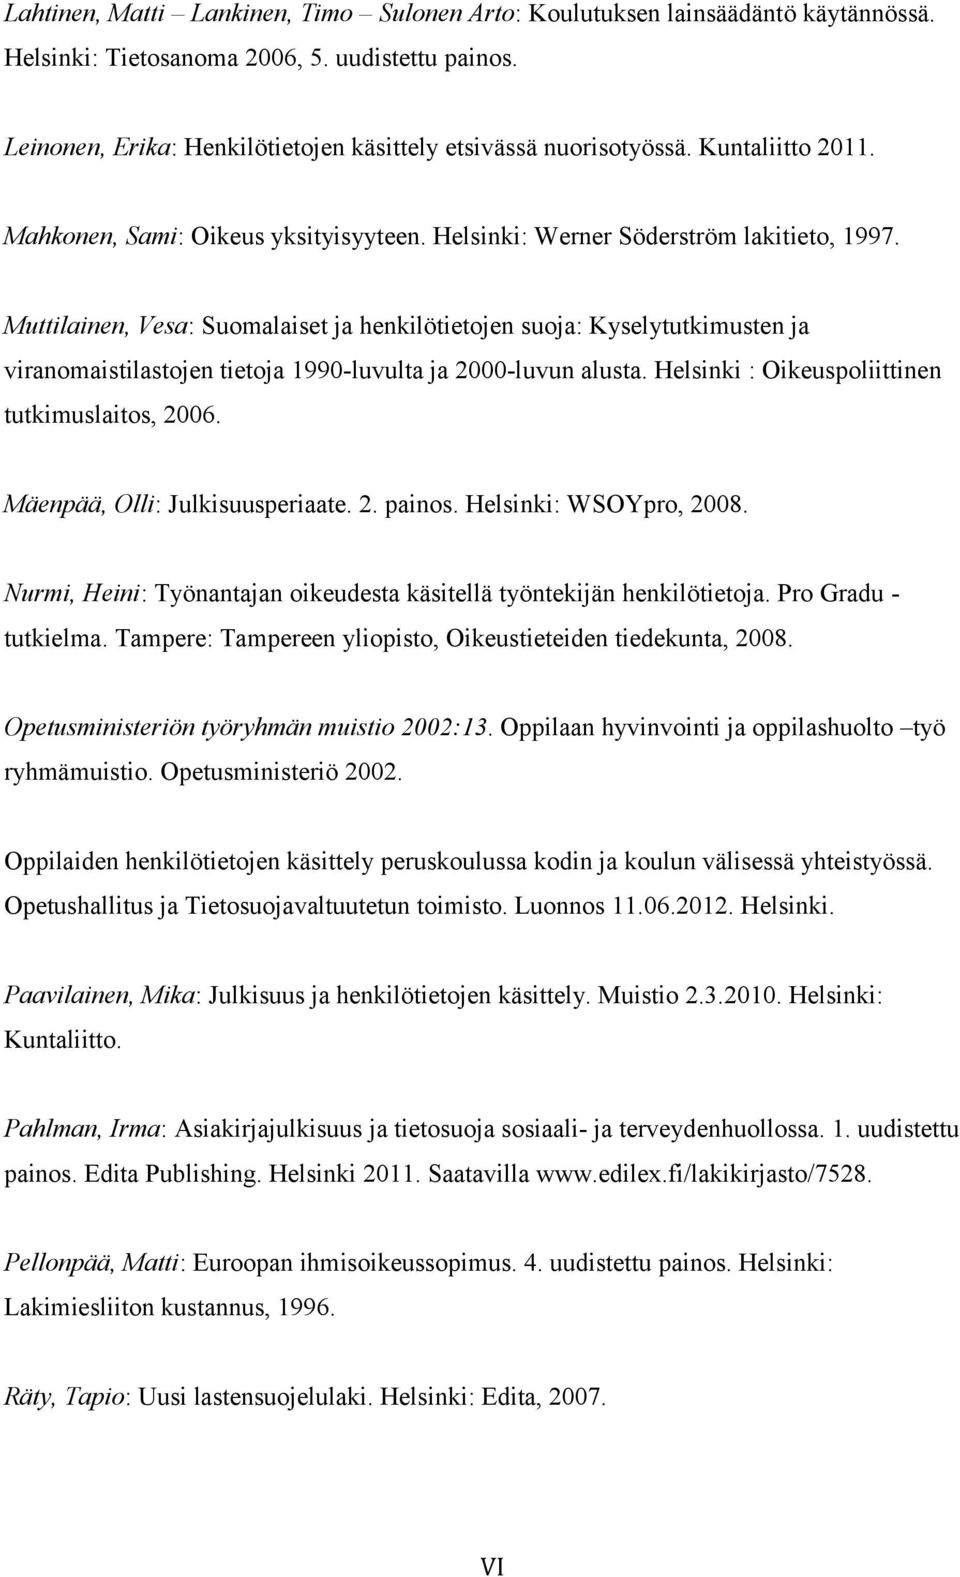 Muttilainen, Vesa: Suomalaiset ja henkilötietojen suoja: Kyselytutkimusten ja viranomaistilastojen tietoja 1990-luvulta ja 2000-luvun alusta. Helsinki : Oikeuspoliittinen tutkimuslaitos, 2006.